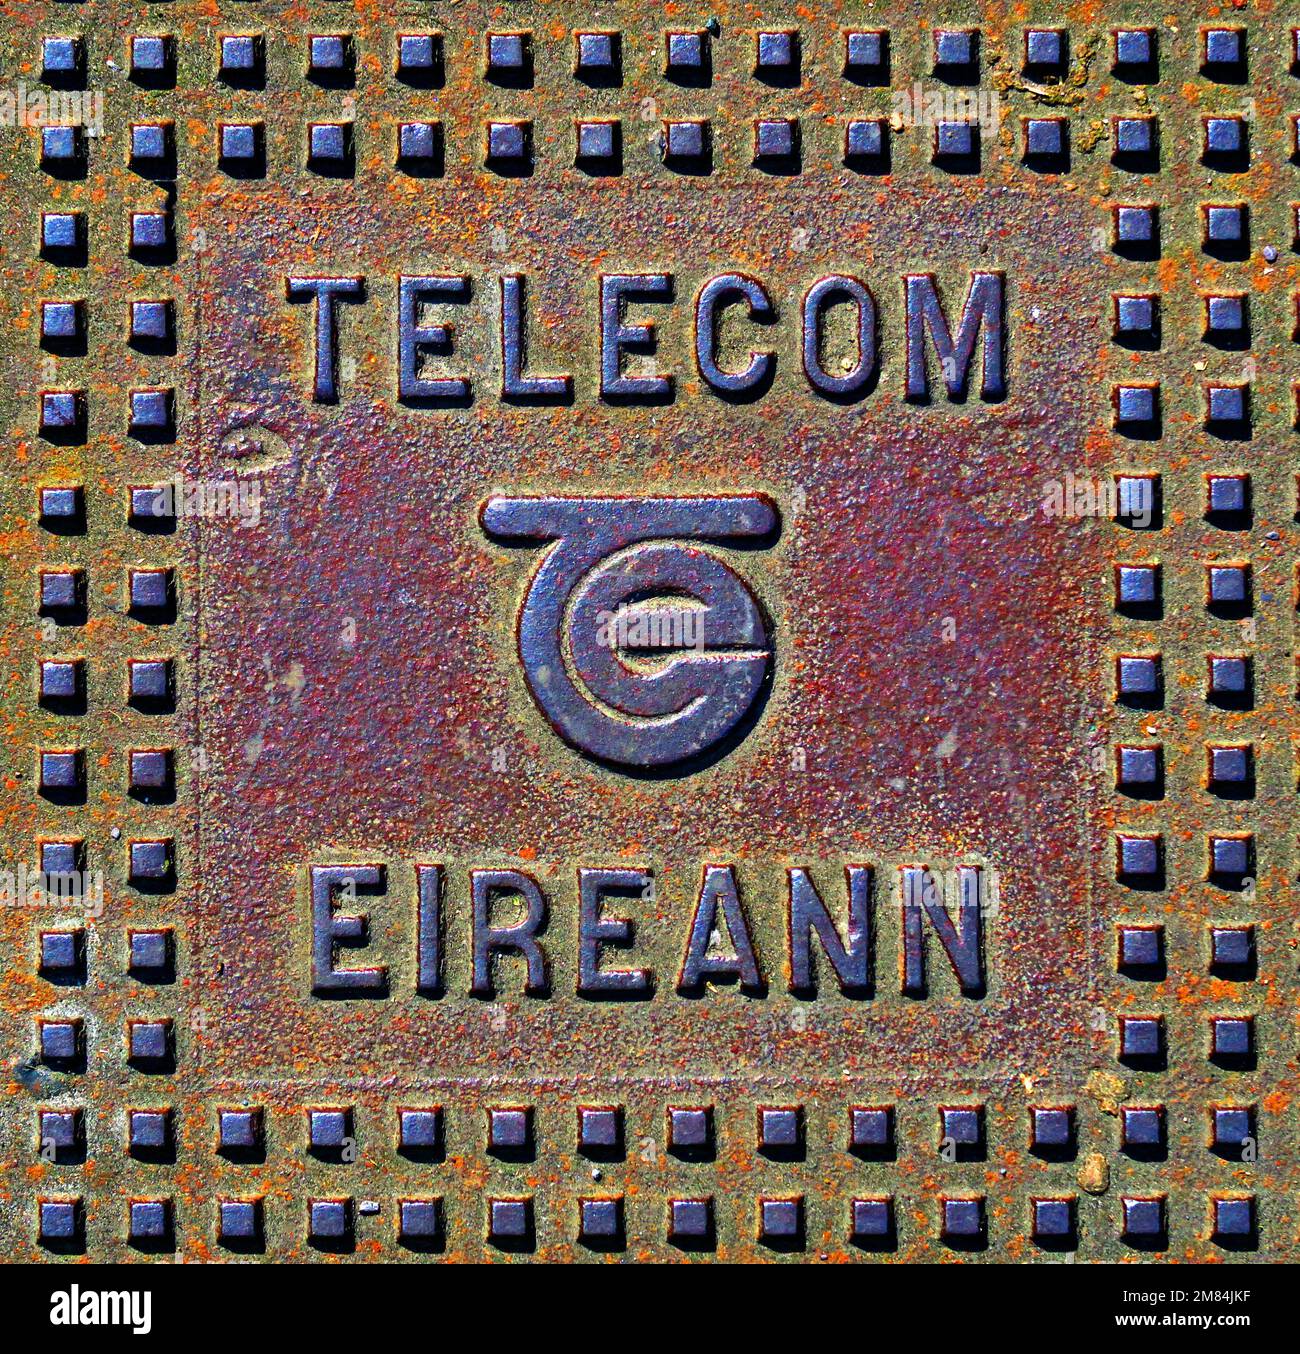 Telecom Eireann, cast iron grid, Dublin, Eire, Ireland, now Eircom Stock Photo